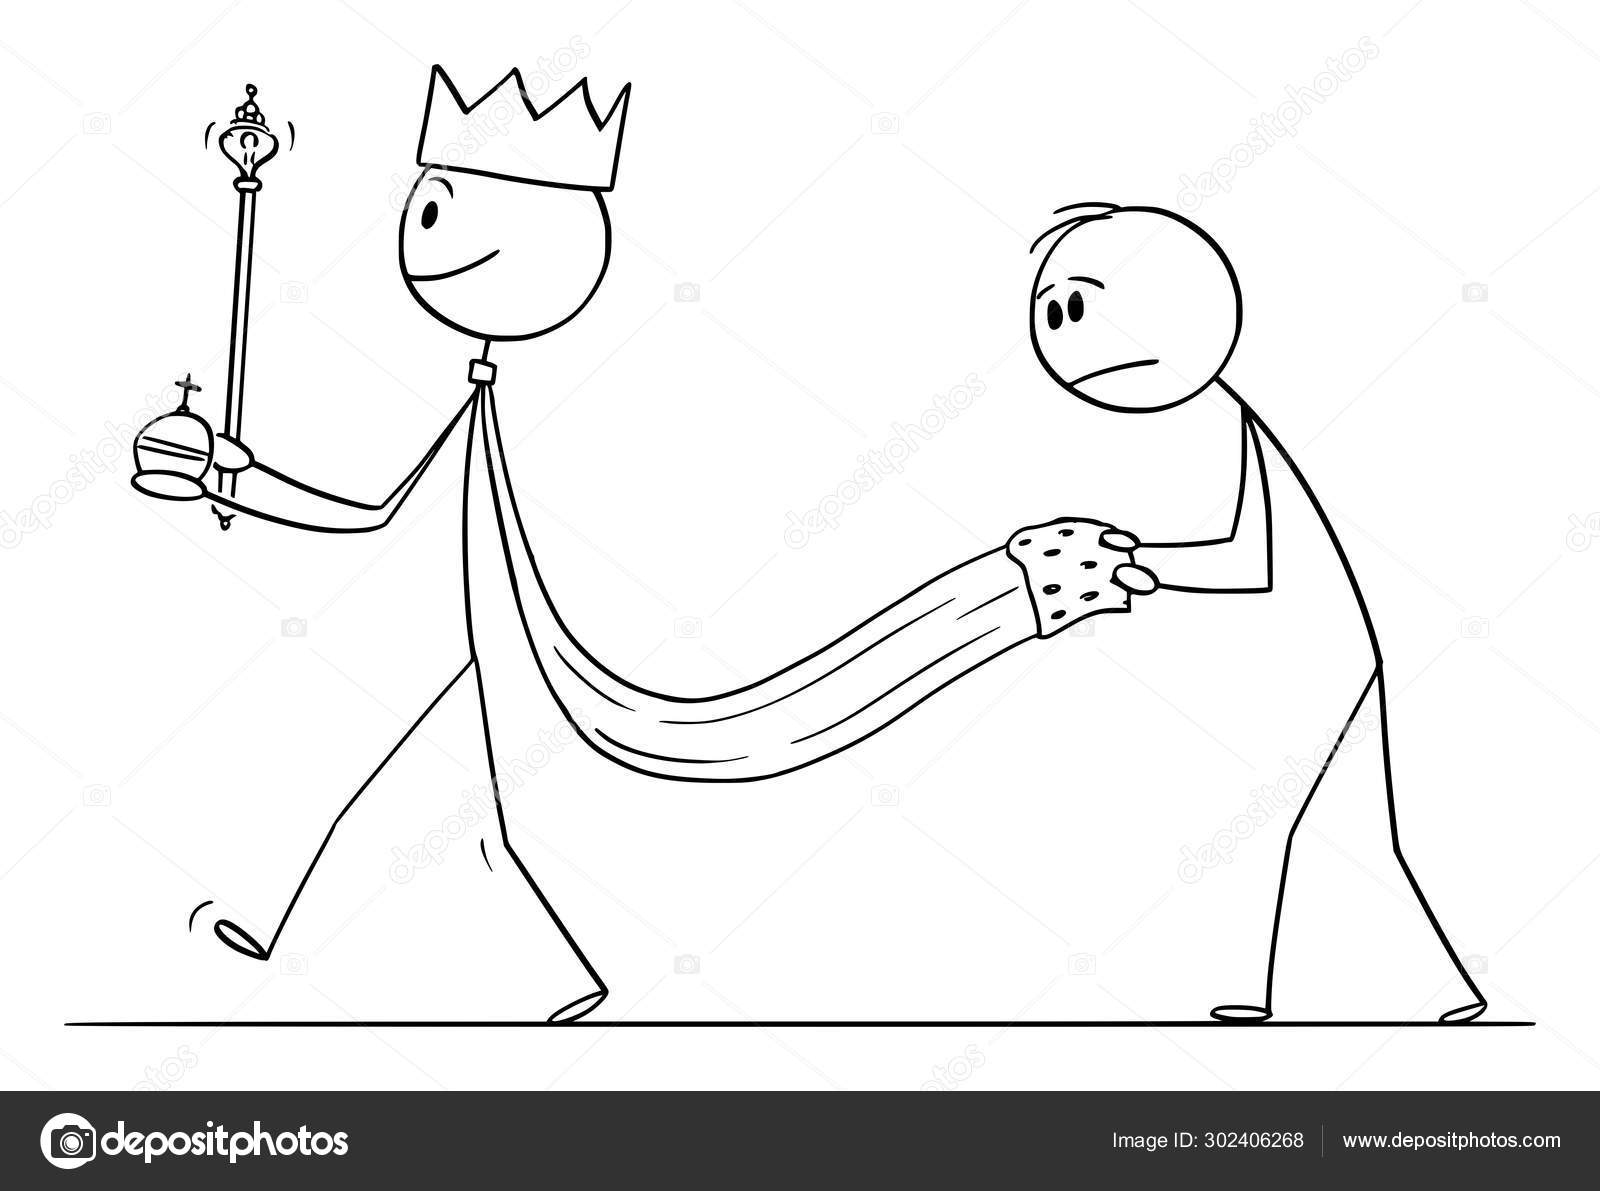 Desenho de arte de linha única do rei do xadrez, ilustração vetorial